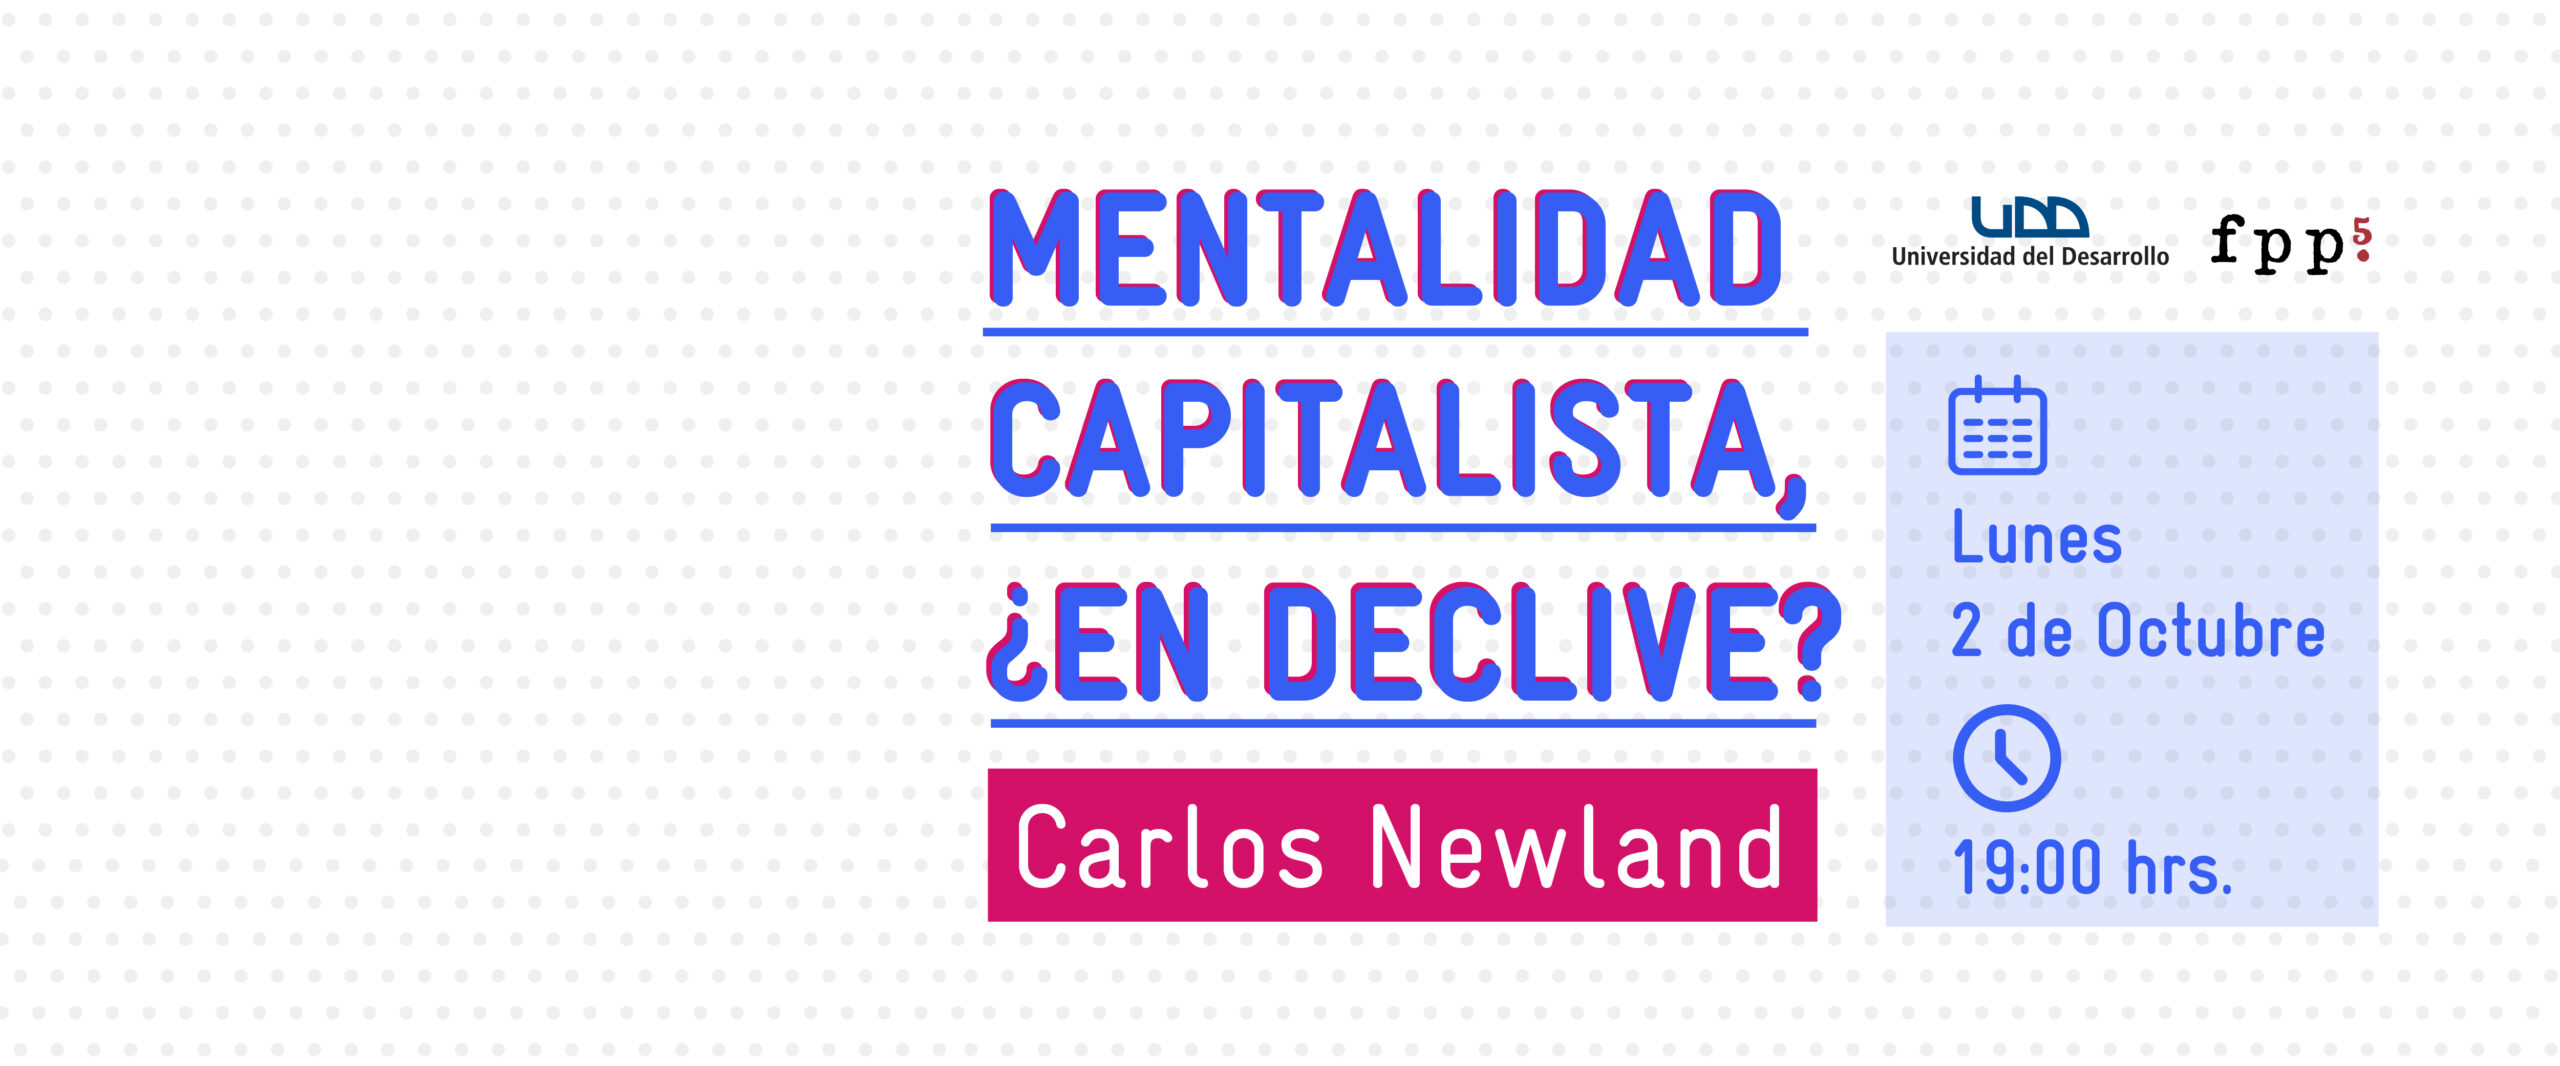 Conversación: "Mentalidad Capitalista, ¿en declive?" con Carlos Newland